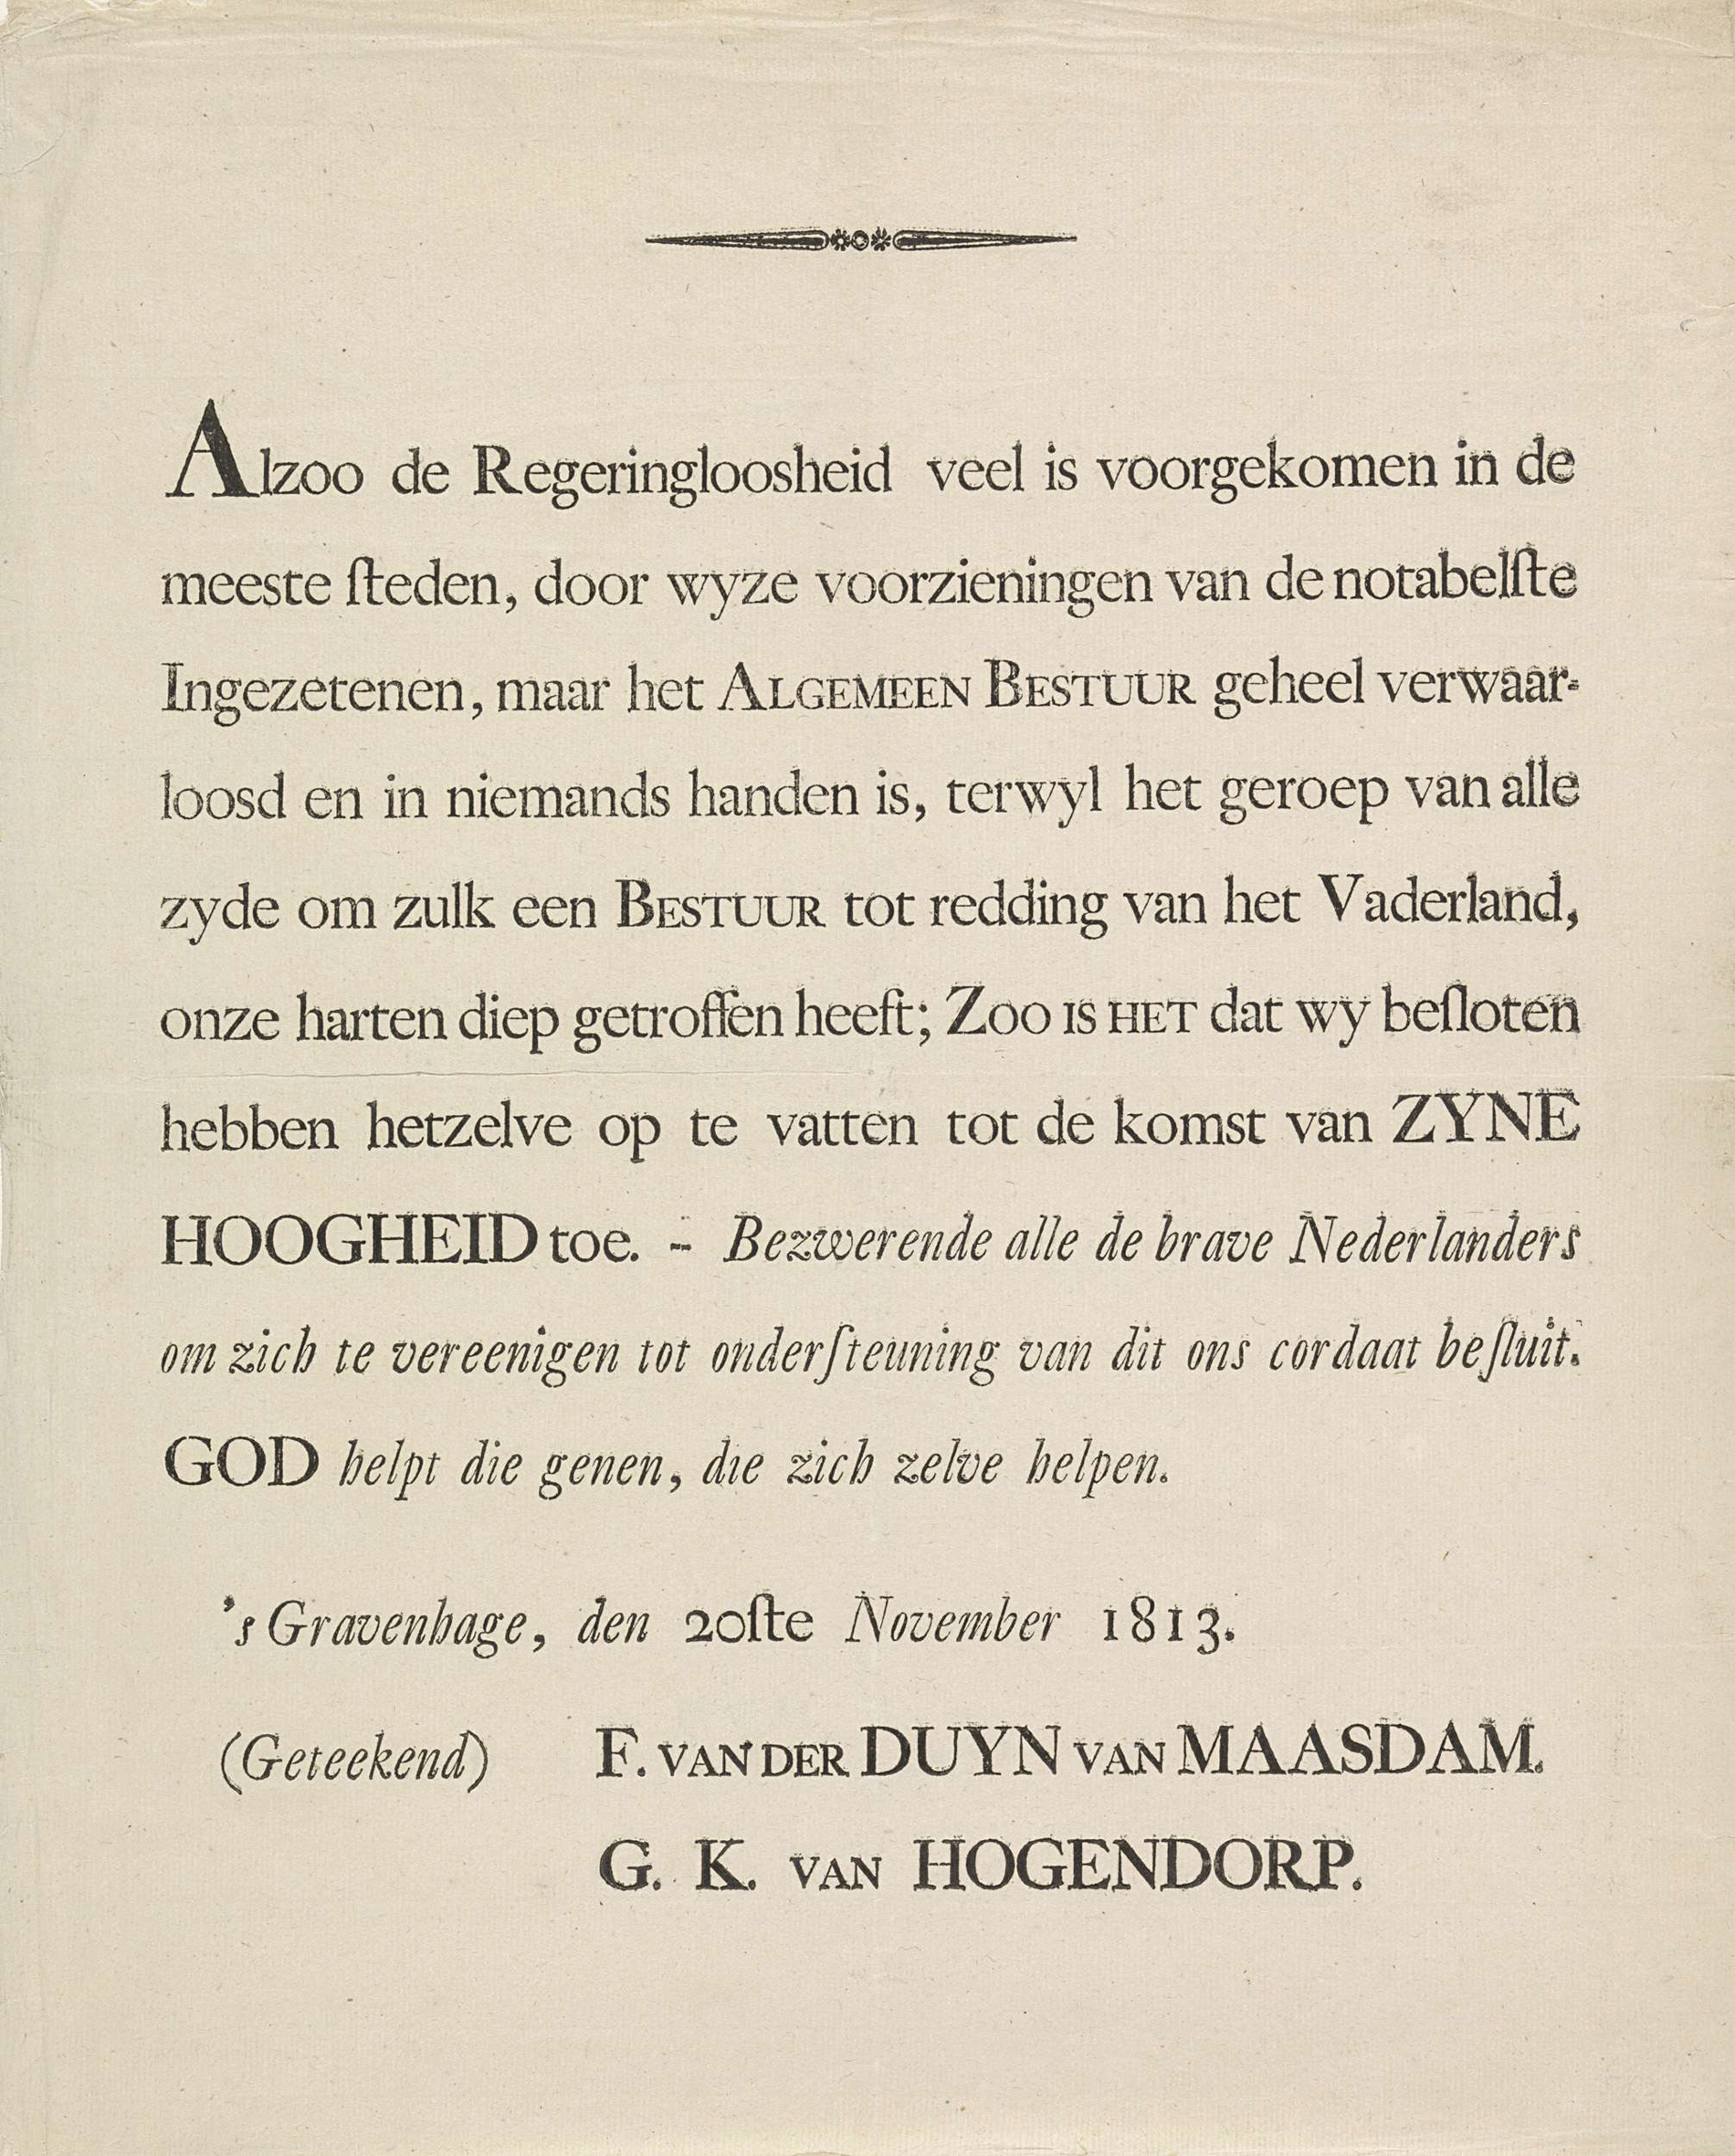 Proclamatie van A.F. van der Duyn en G.K. van Hogendorp, 20 november 1813 (Rijksmuseum)